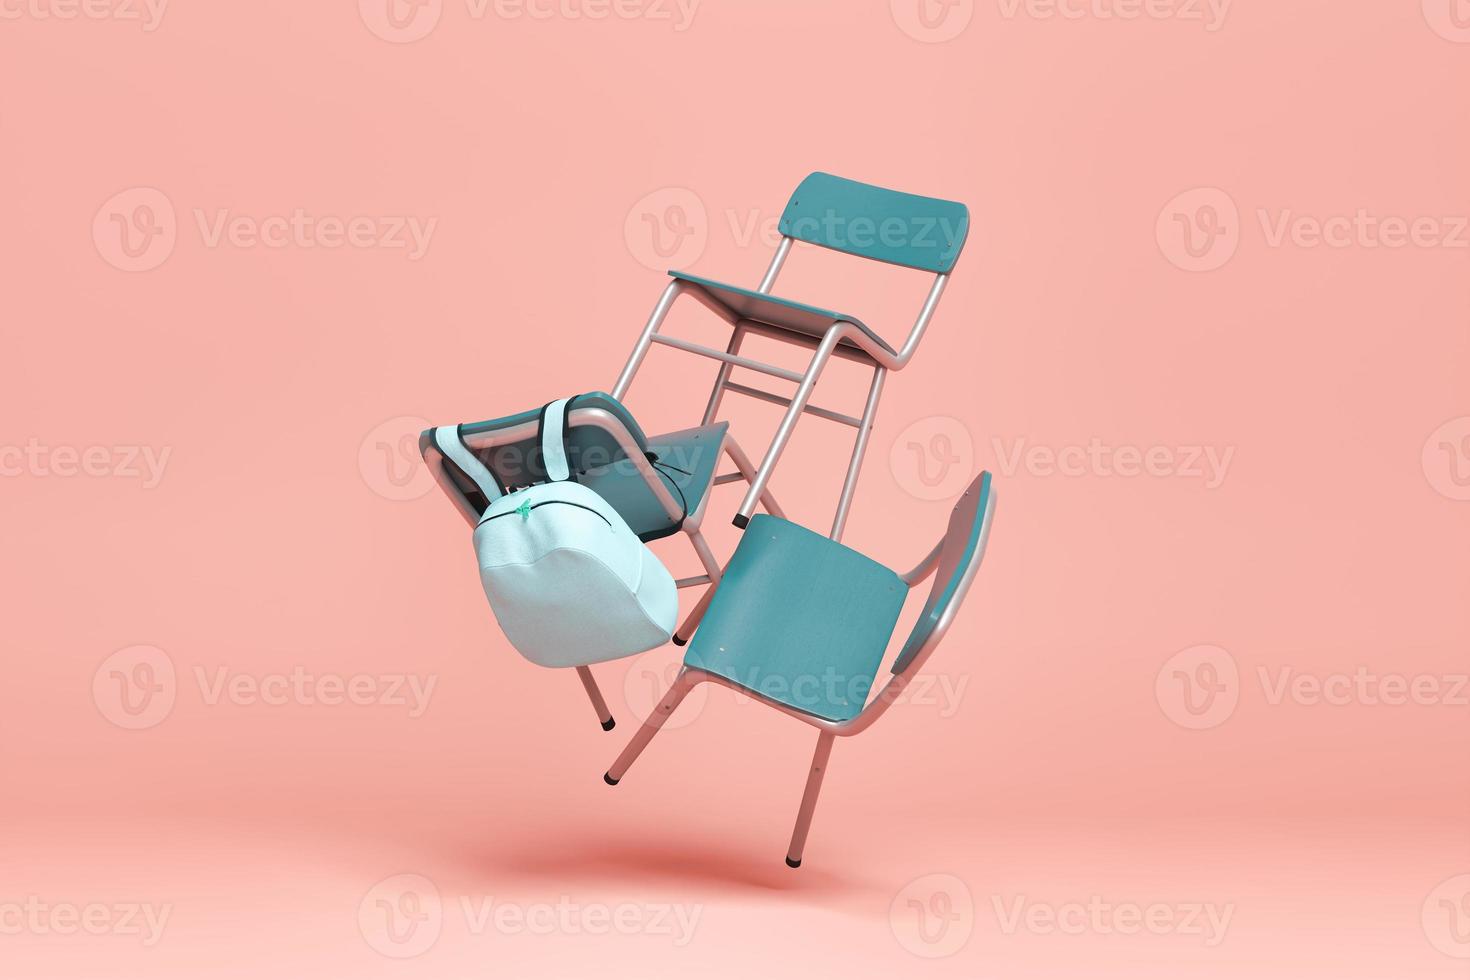 cadeiras com mochila flutuando no ar foto